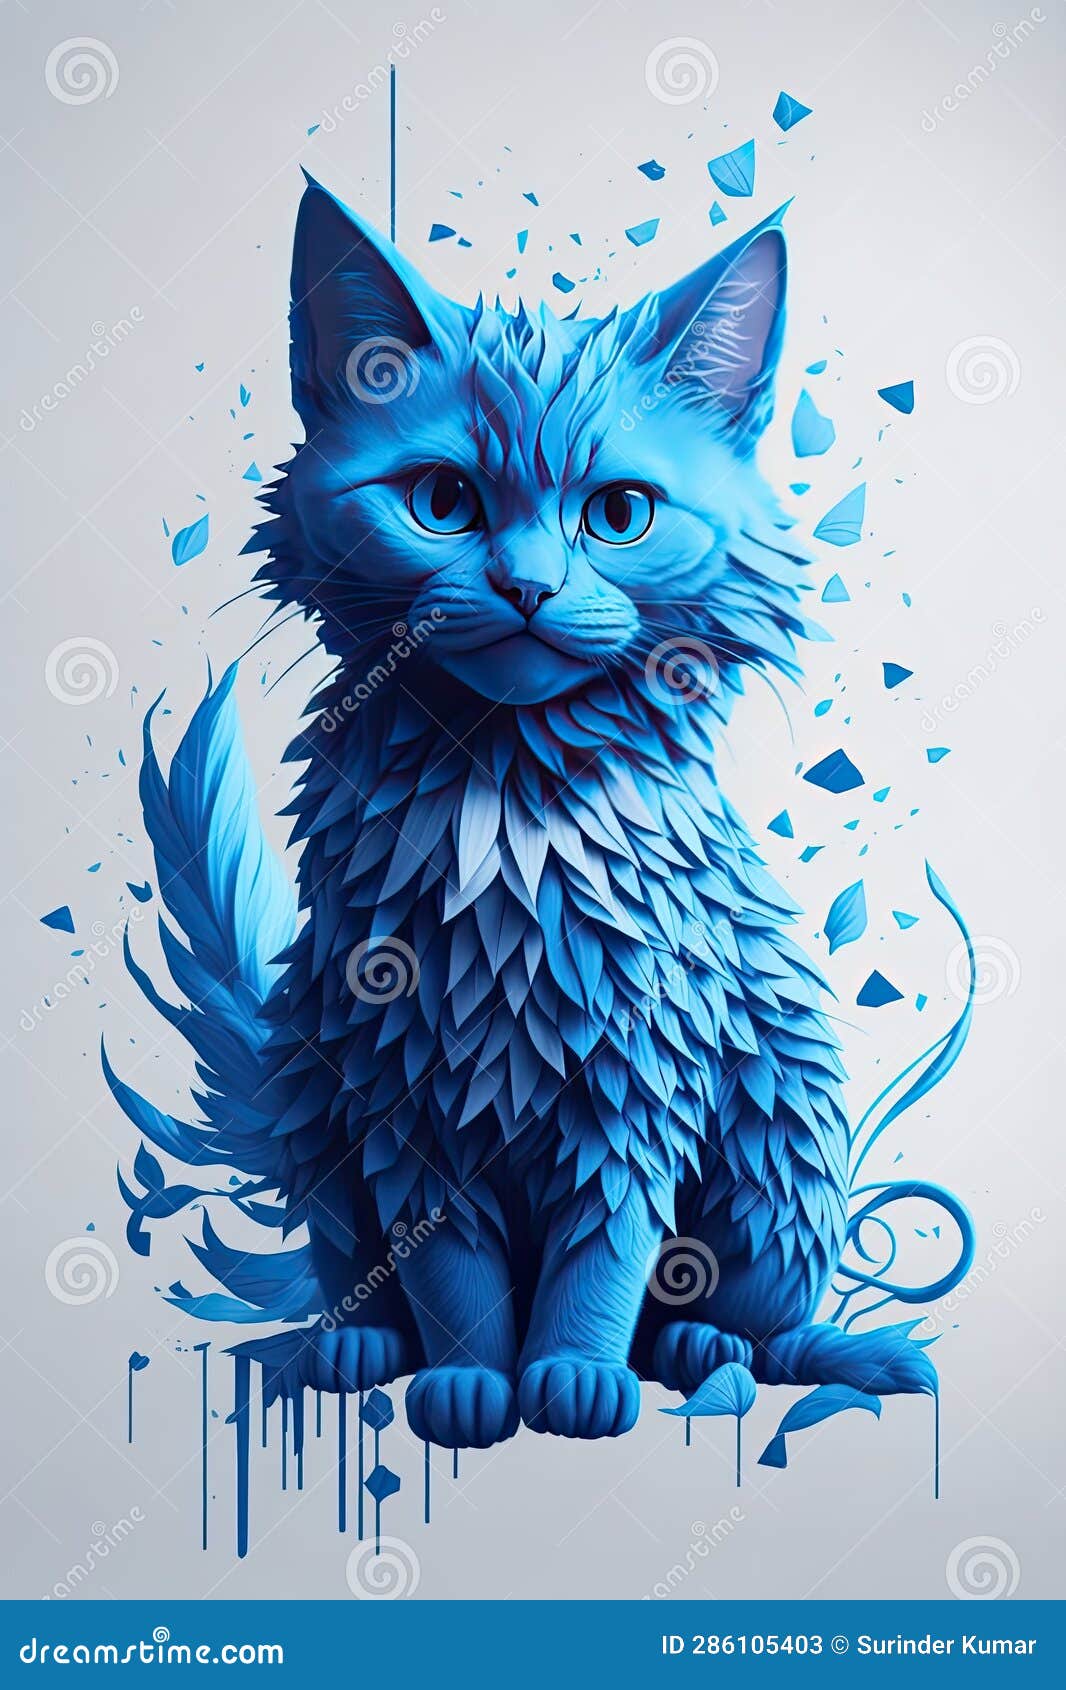 c'est un animal magnifique de type chat bleu